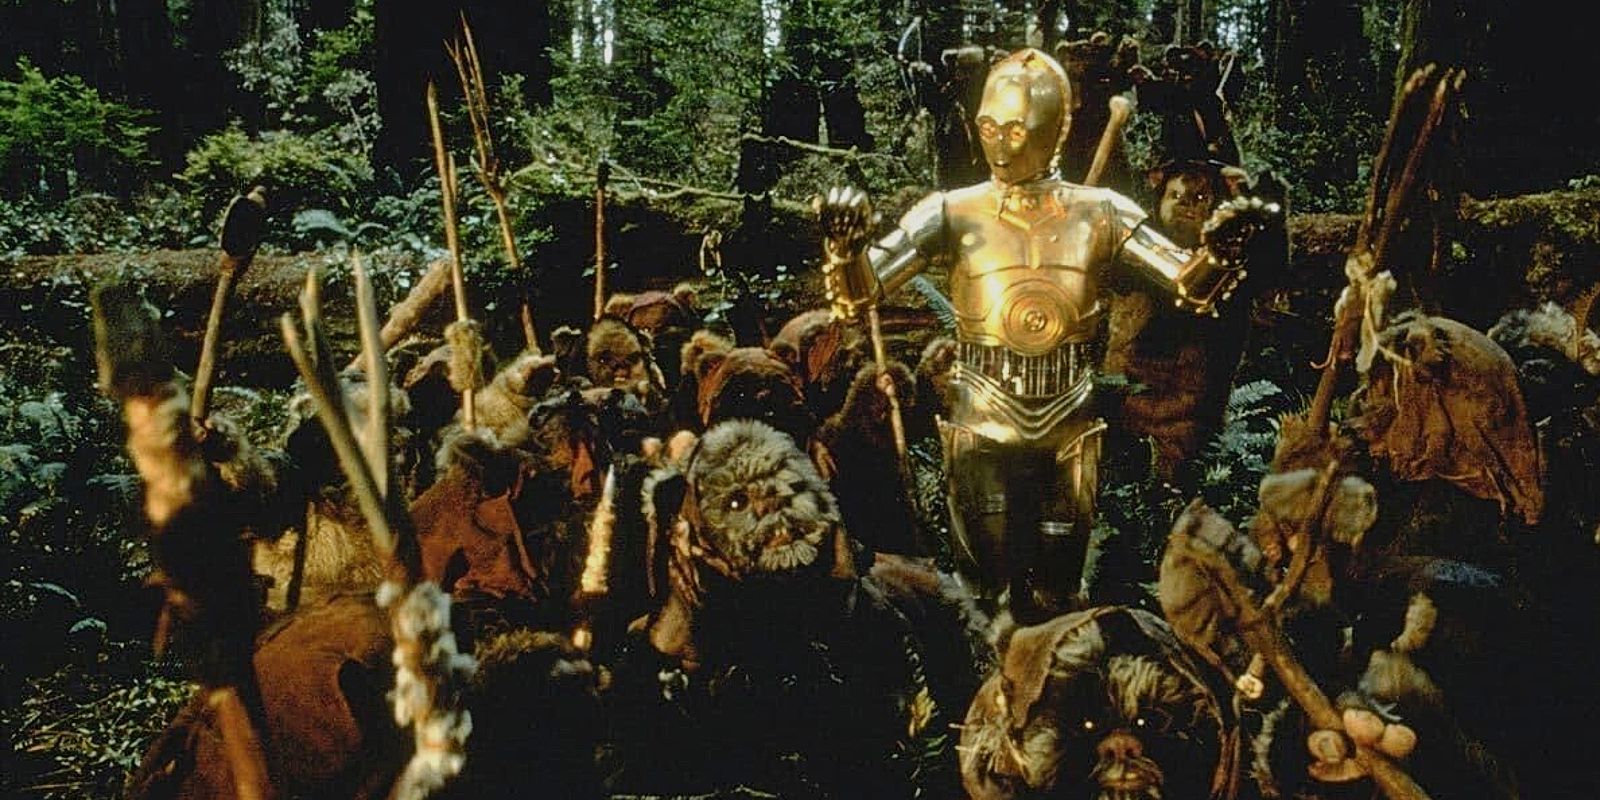 Star Wars C-3PO and Ewoks